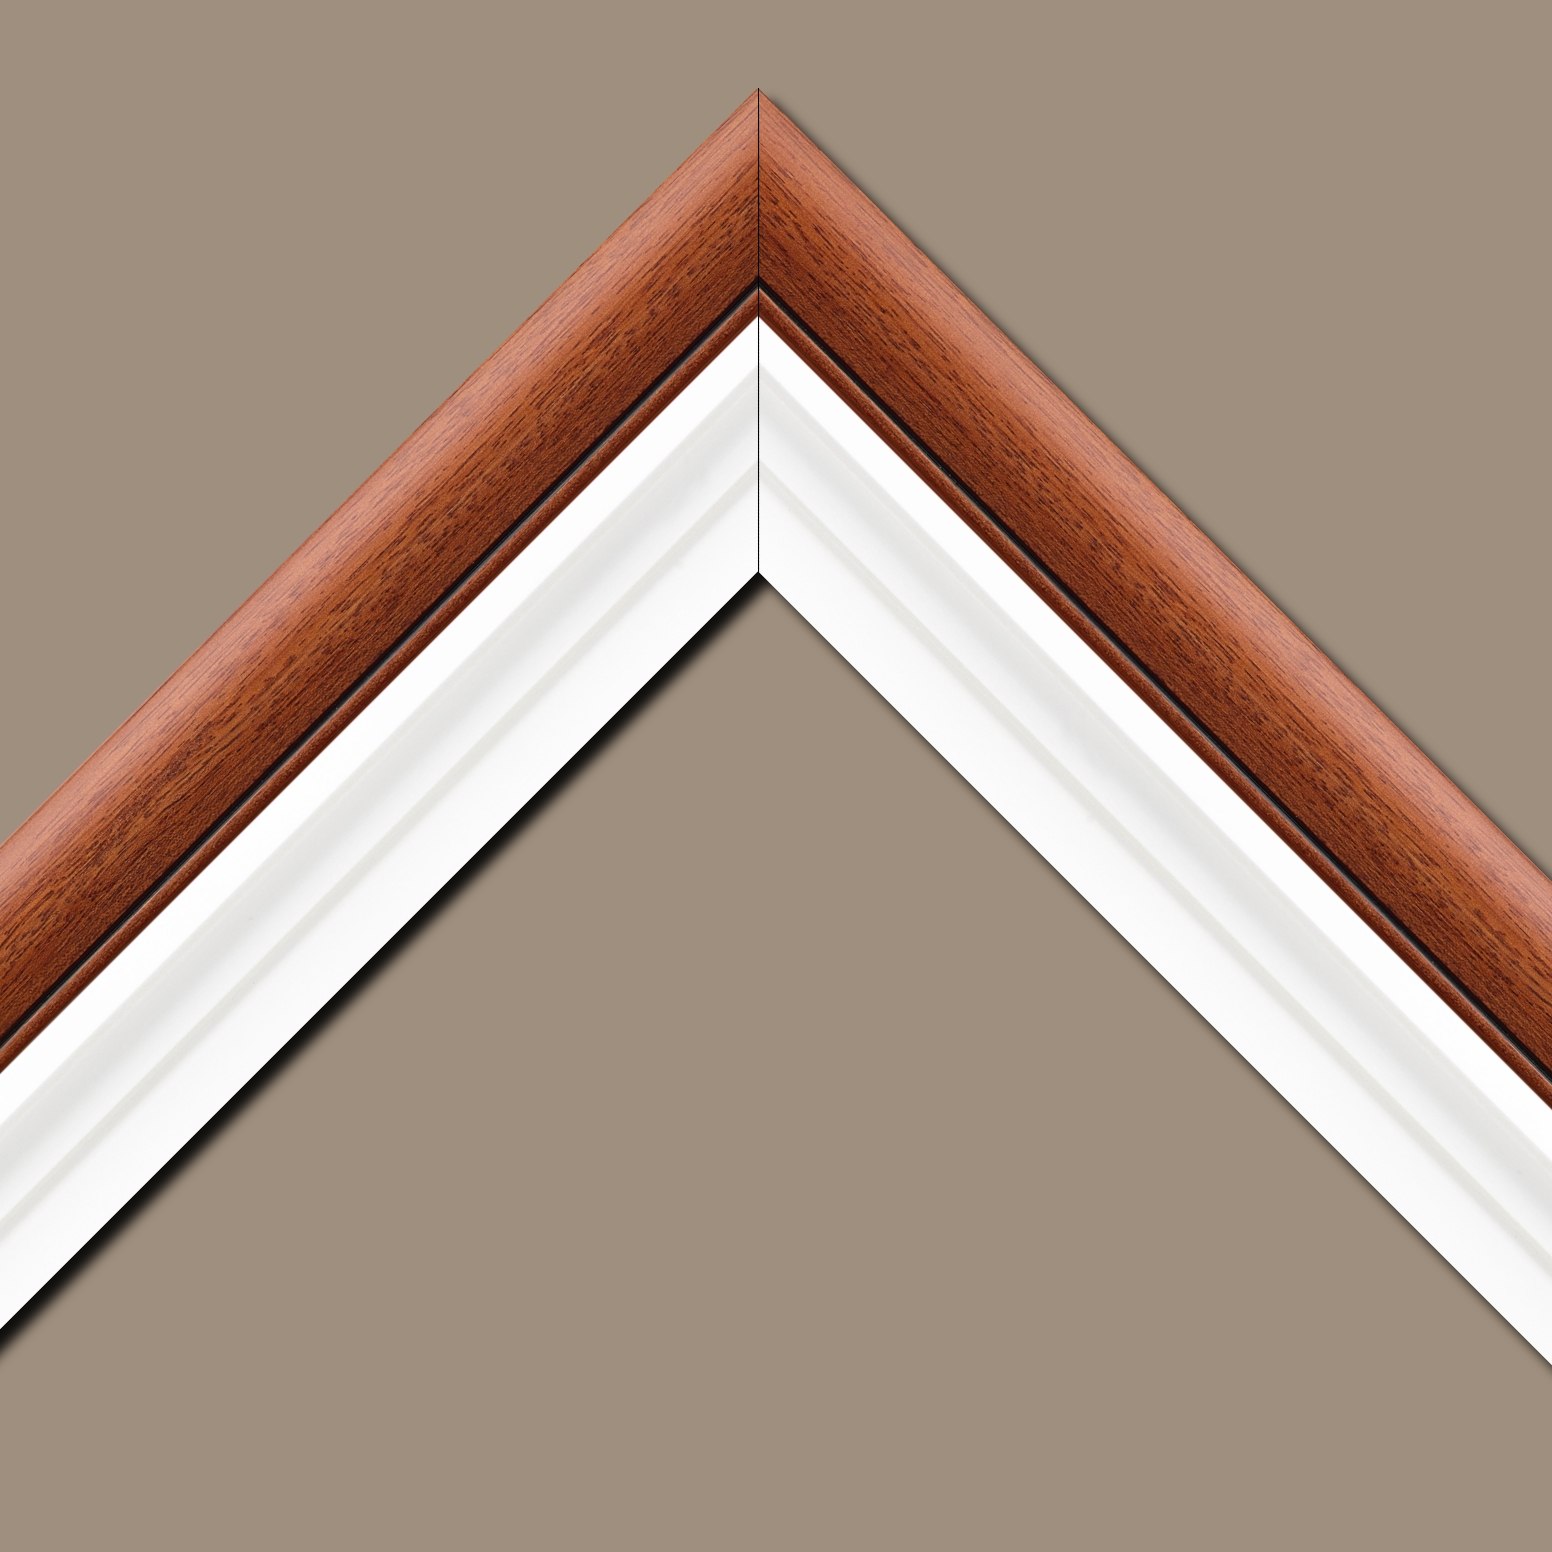 Baguette bois profil arrondi largeur 4.7cm couleur marron ton bois satiné rehaussé d'un filet noir + bois caisse américaine profil escalier largeur 4.4cm blanc mat   (spécialement conçu pour les châssis d'une épaisseur jusqu’à 2.5cm ) largeur total du cadre : 8.3cm